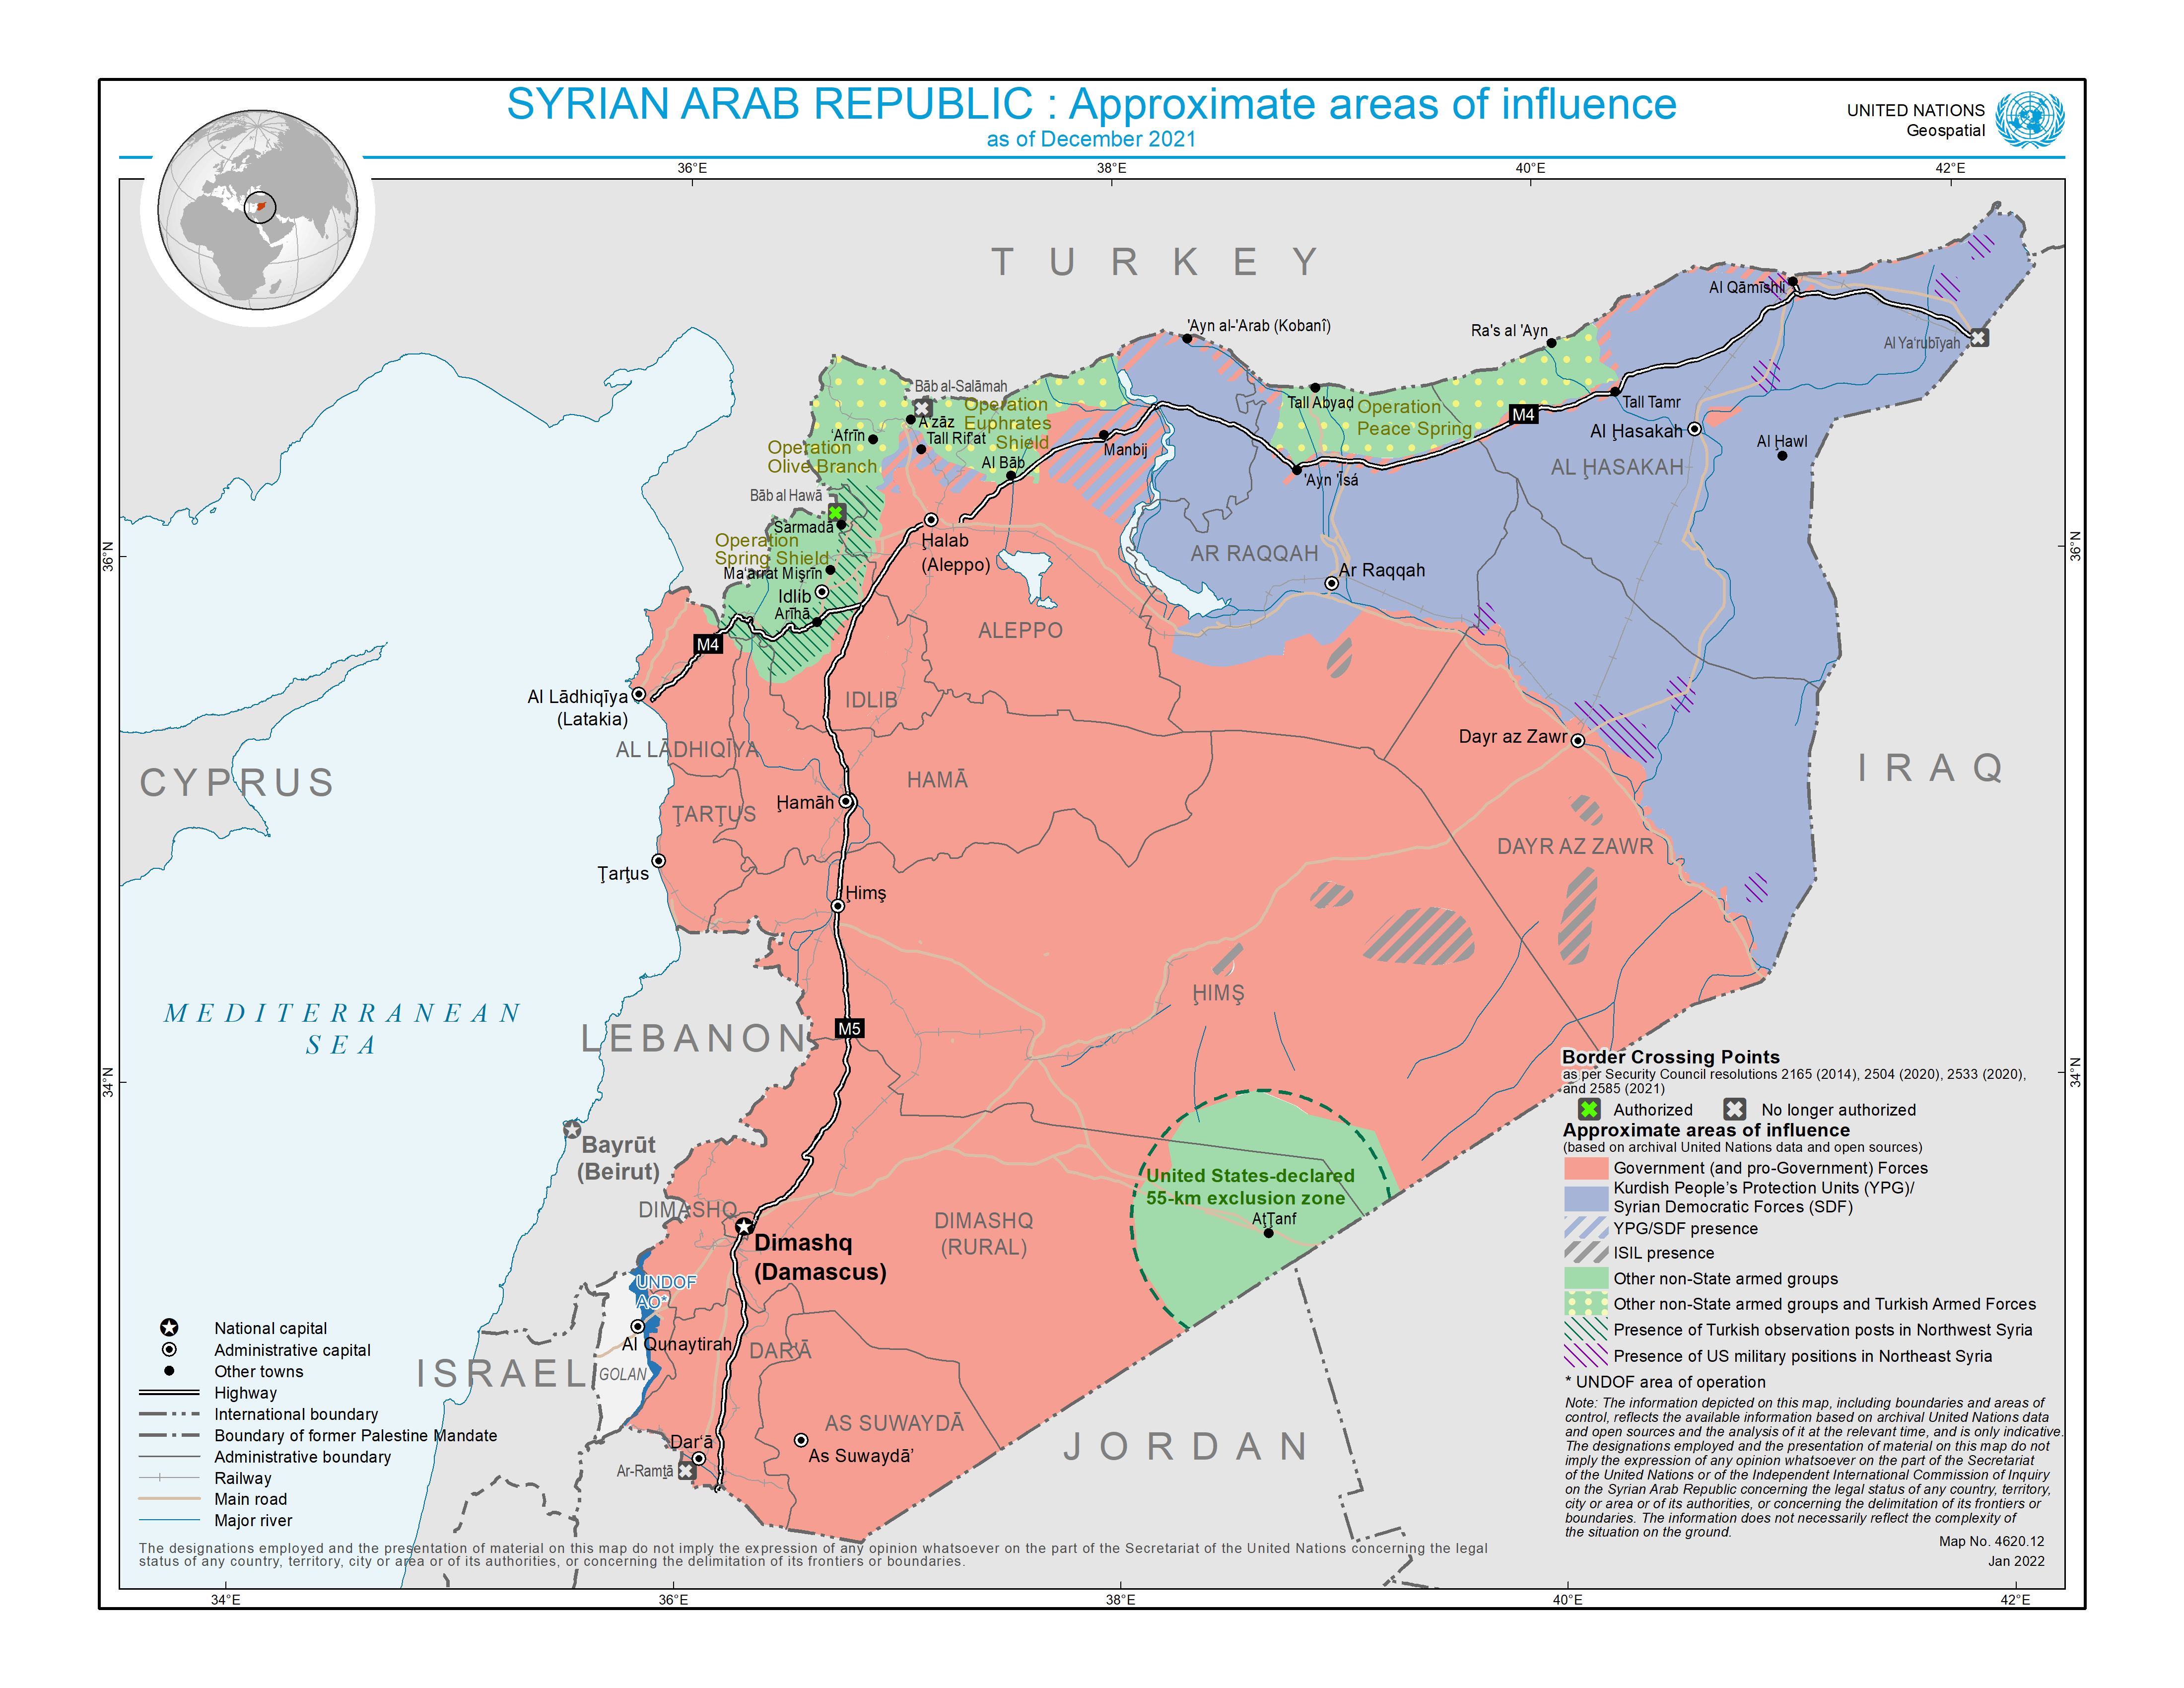 JPG: الجمهورية العربية السورية: الجدول الزمني لمناطق النفوذ التقريبية